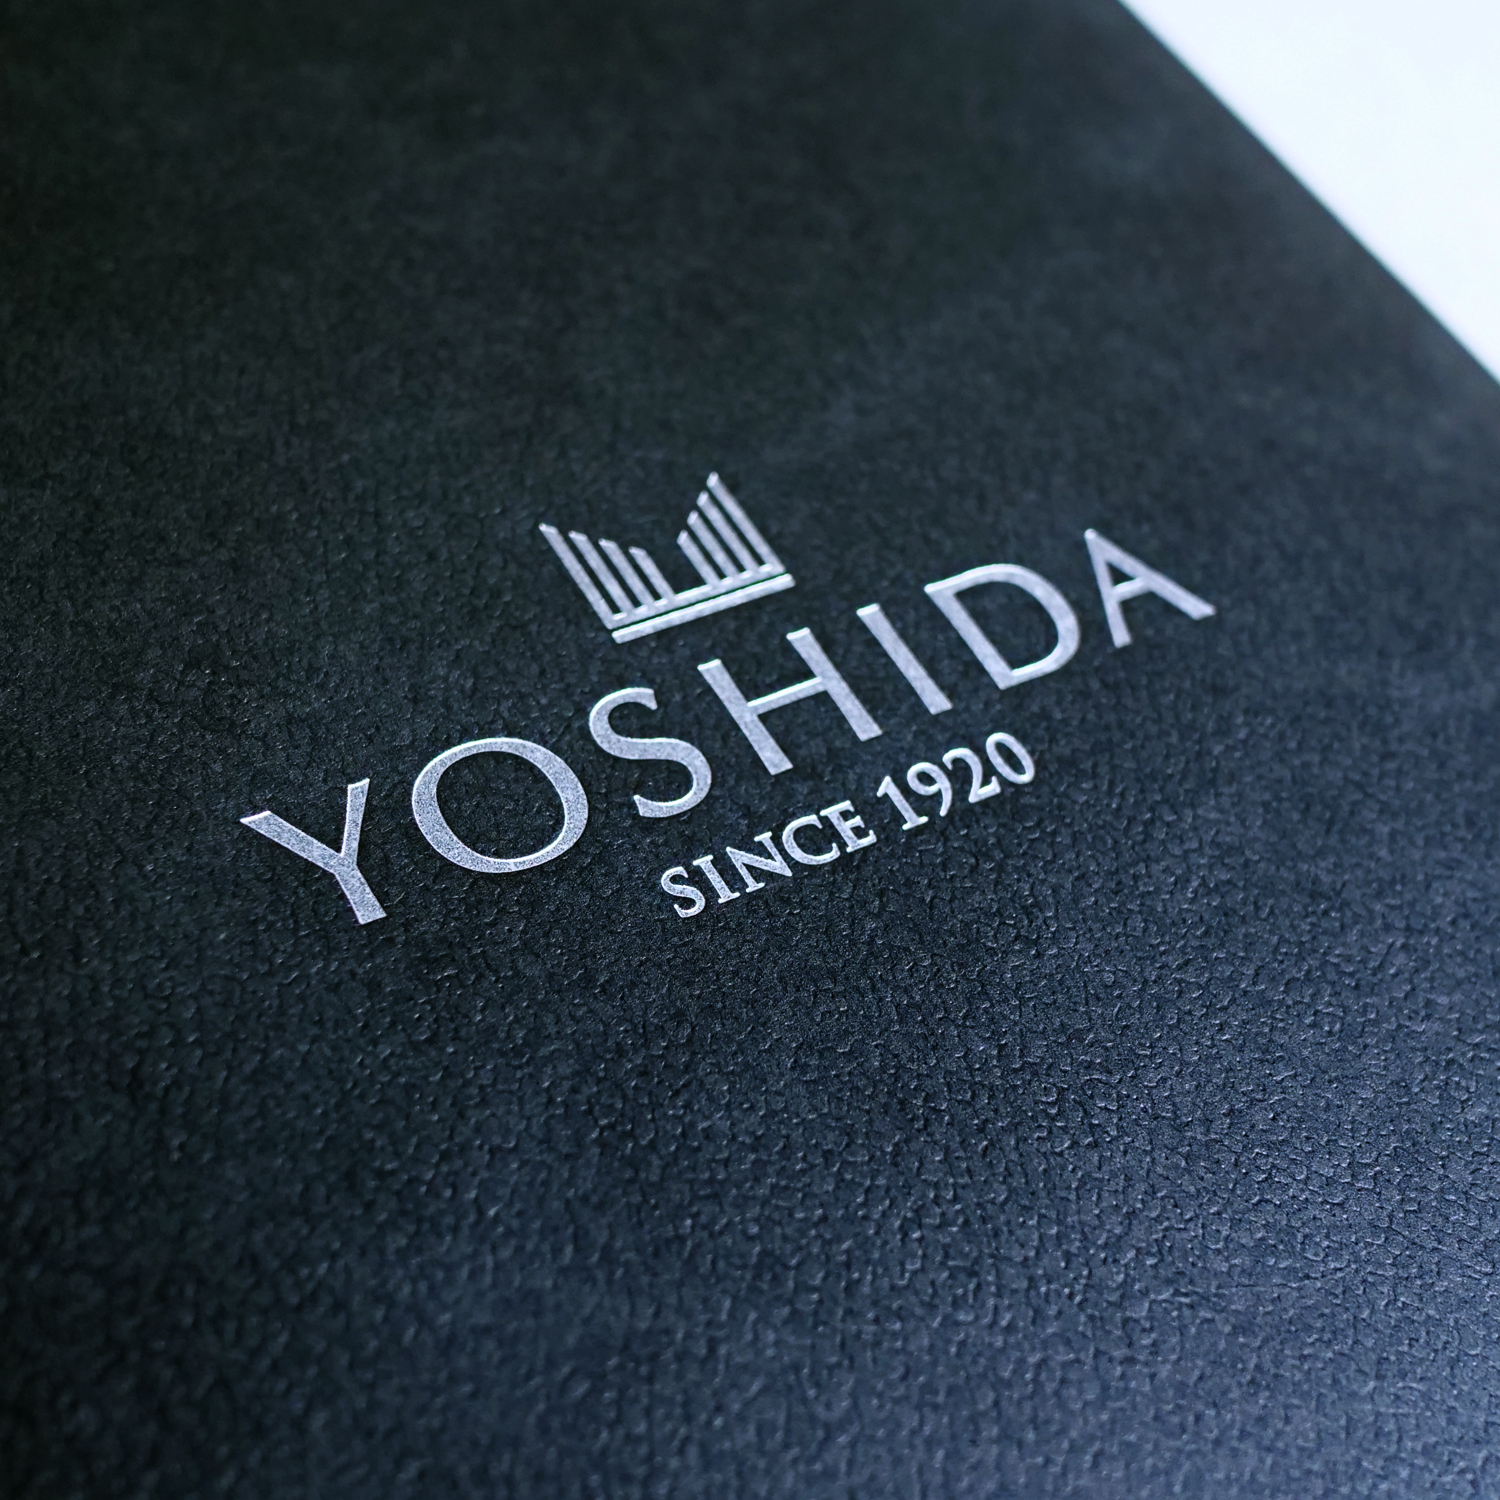 Yoshida_1500pix_C